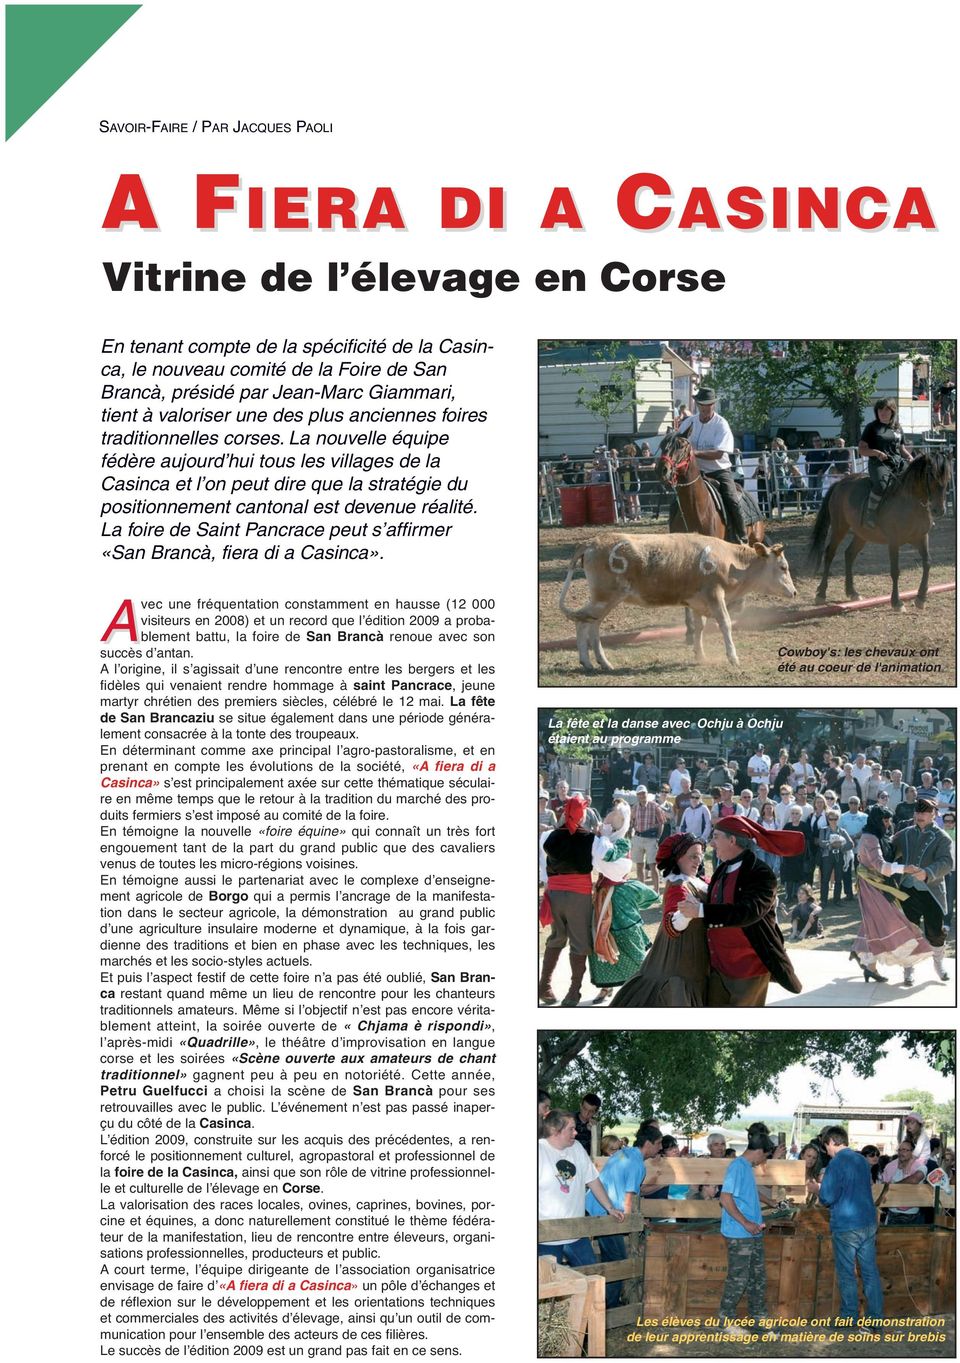 La nouvelle équipe fédère aujourd hui tous les villages de la Casinca et l on peut dire que la stratégie du positionnement cantonal est devenue réalité.